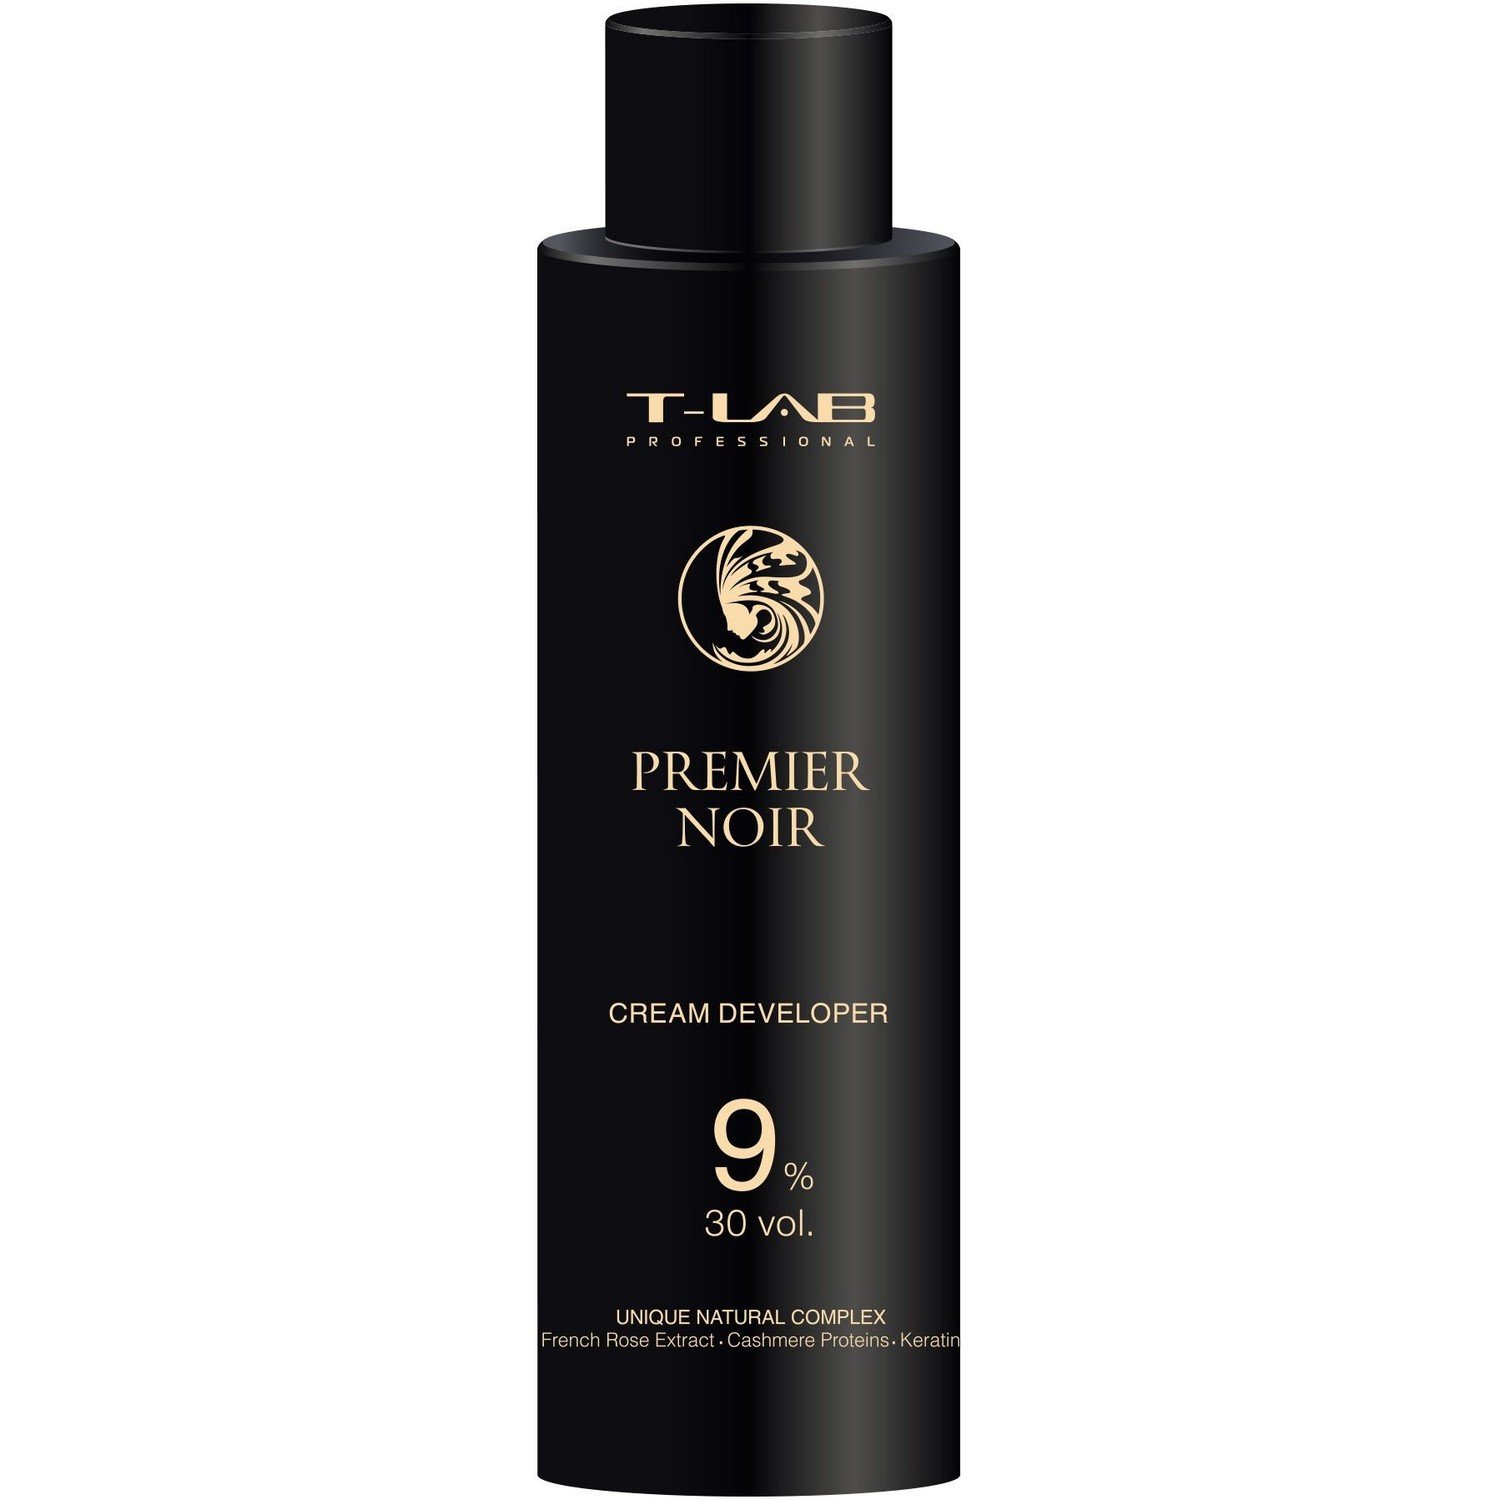 Крем-проявитель T-LAB Professional Premier Noir Cream developer 9%, 30 vol - фото 1